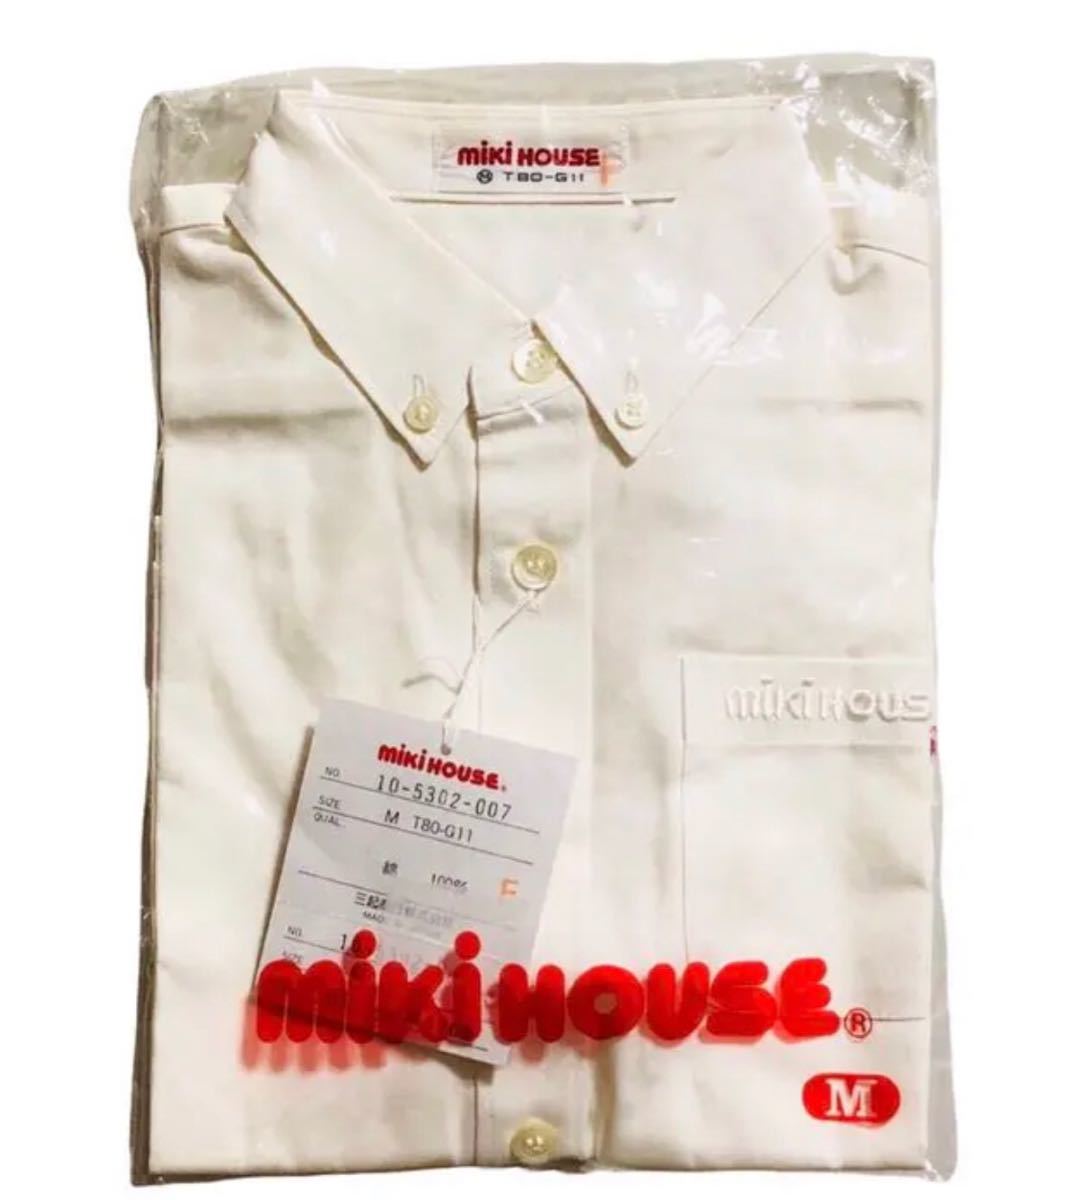 【新品】ミキハウス 半袖シャツ 白シャツ MIKIHOUSE ベビーウェア フォーマル ボタンダウンシャツ